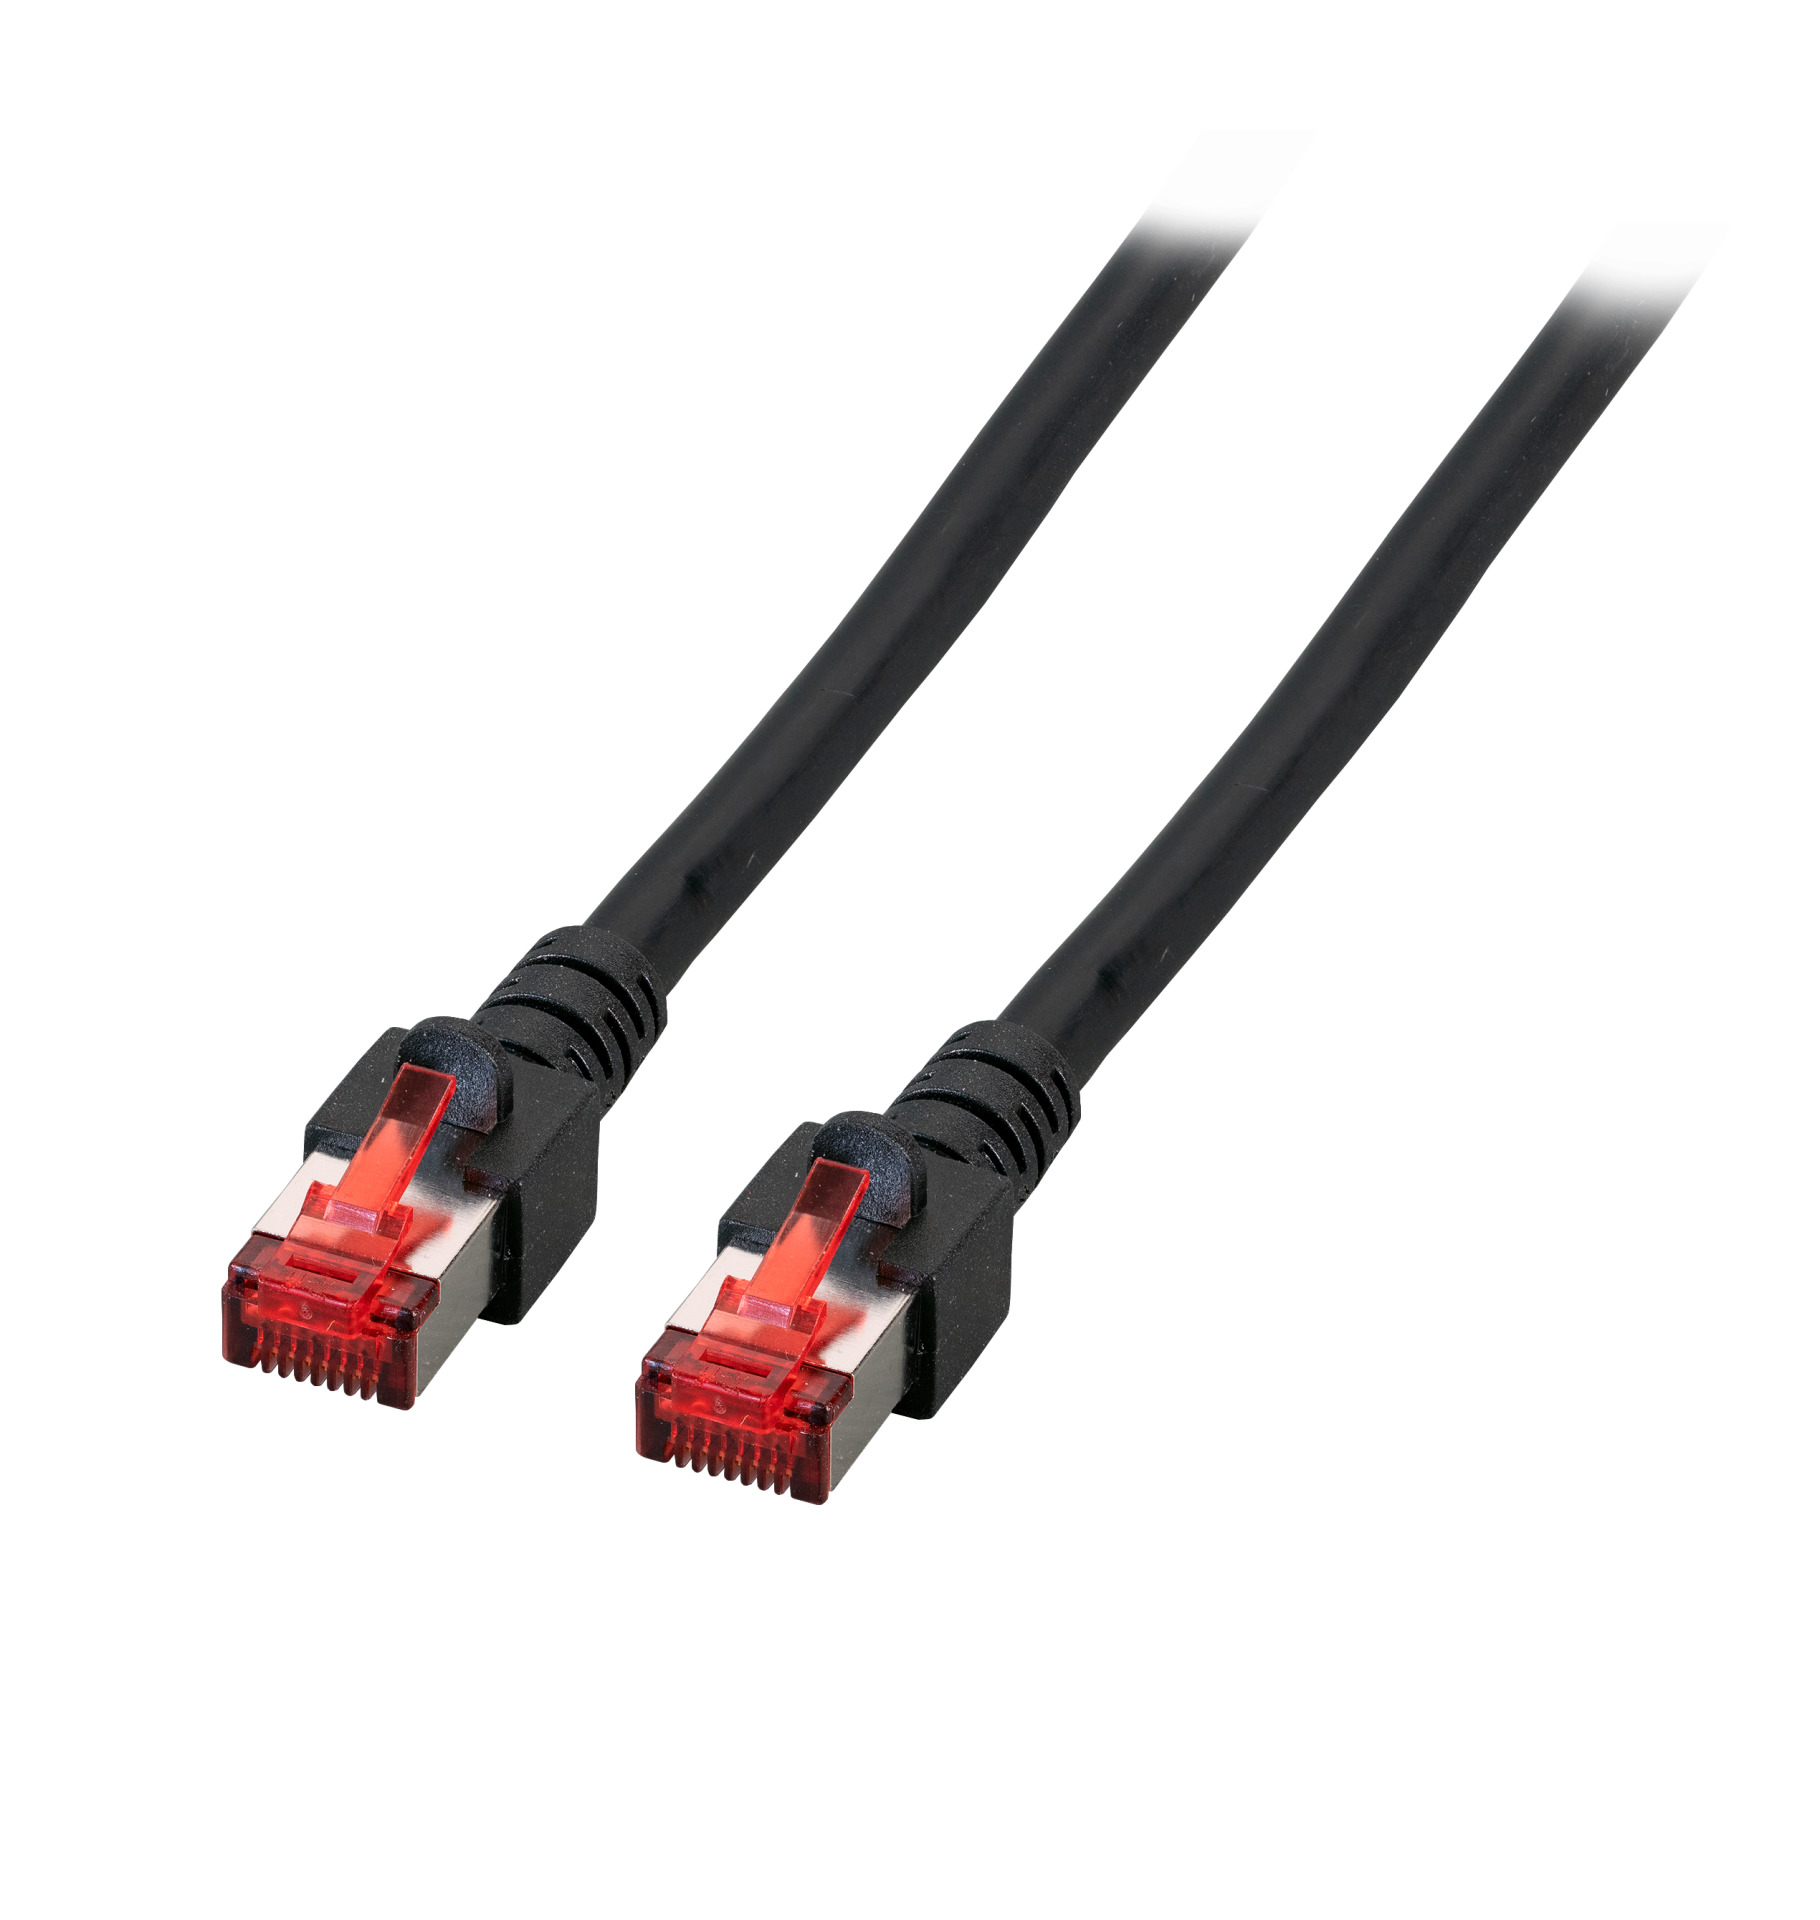 RJ45 Patch cable S/FTP, Cat.6, LSZH, 2m, black